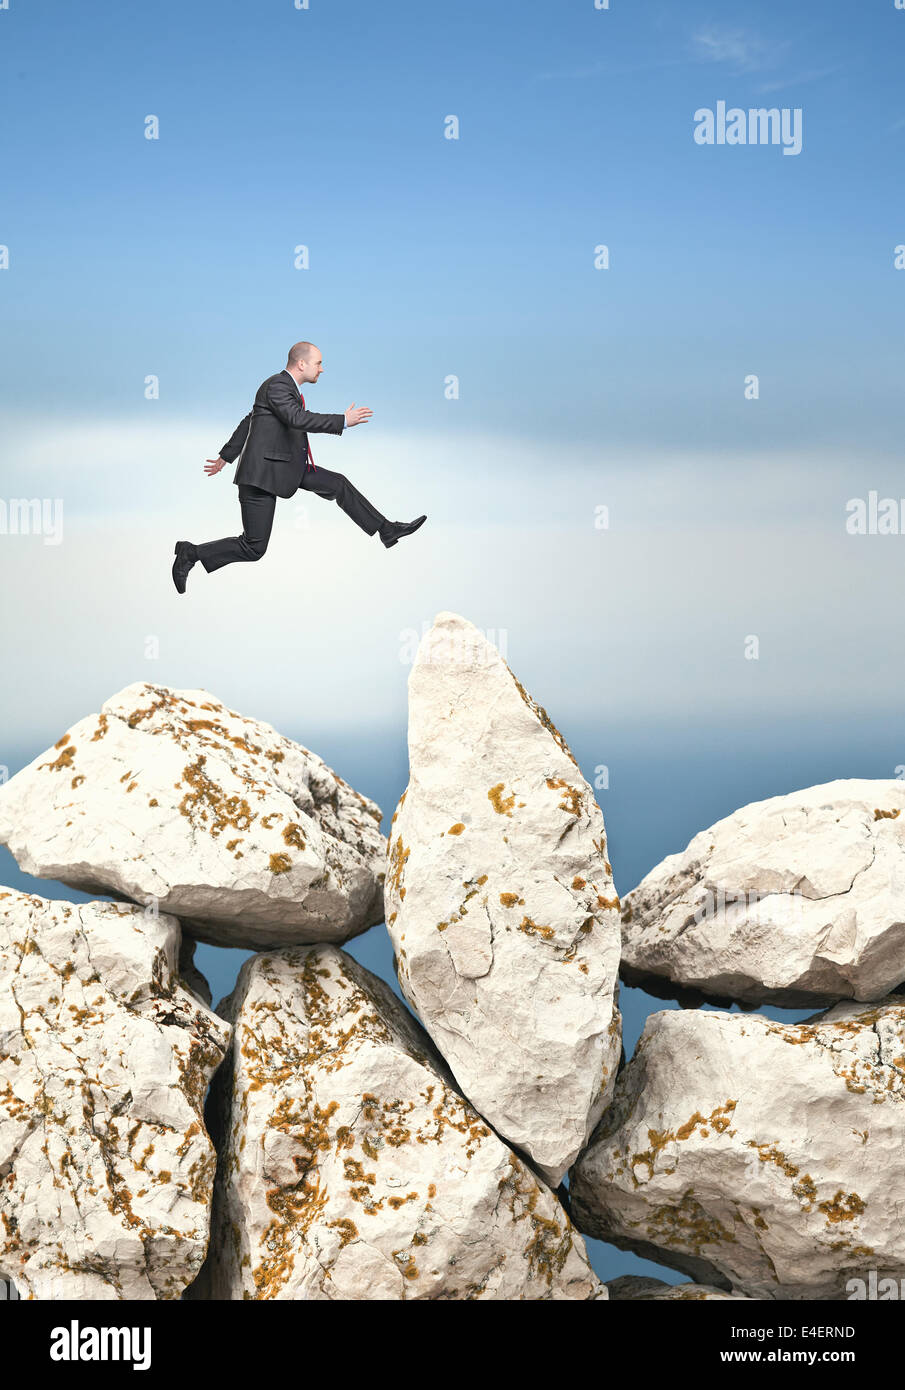 Businessman de saut d'énorme rocher Banque D'Images